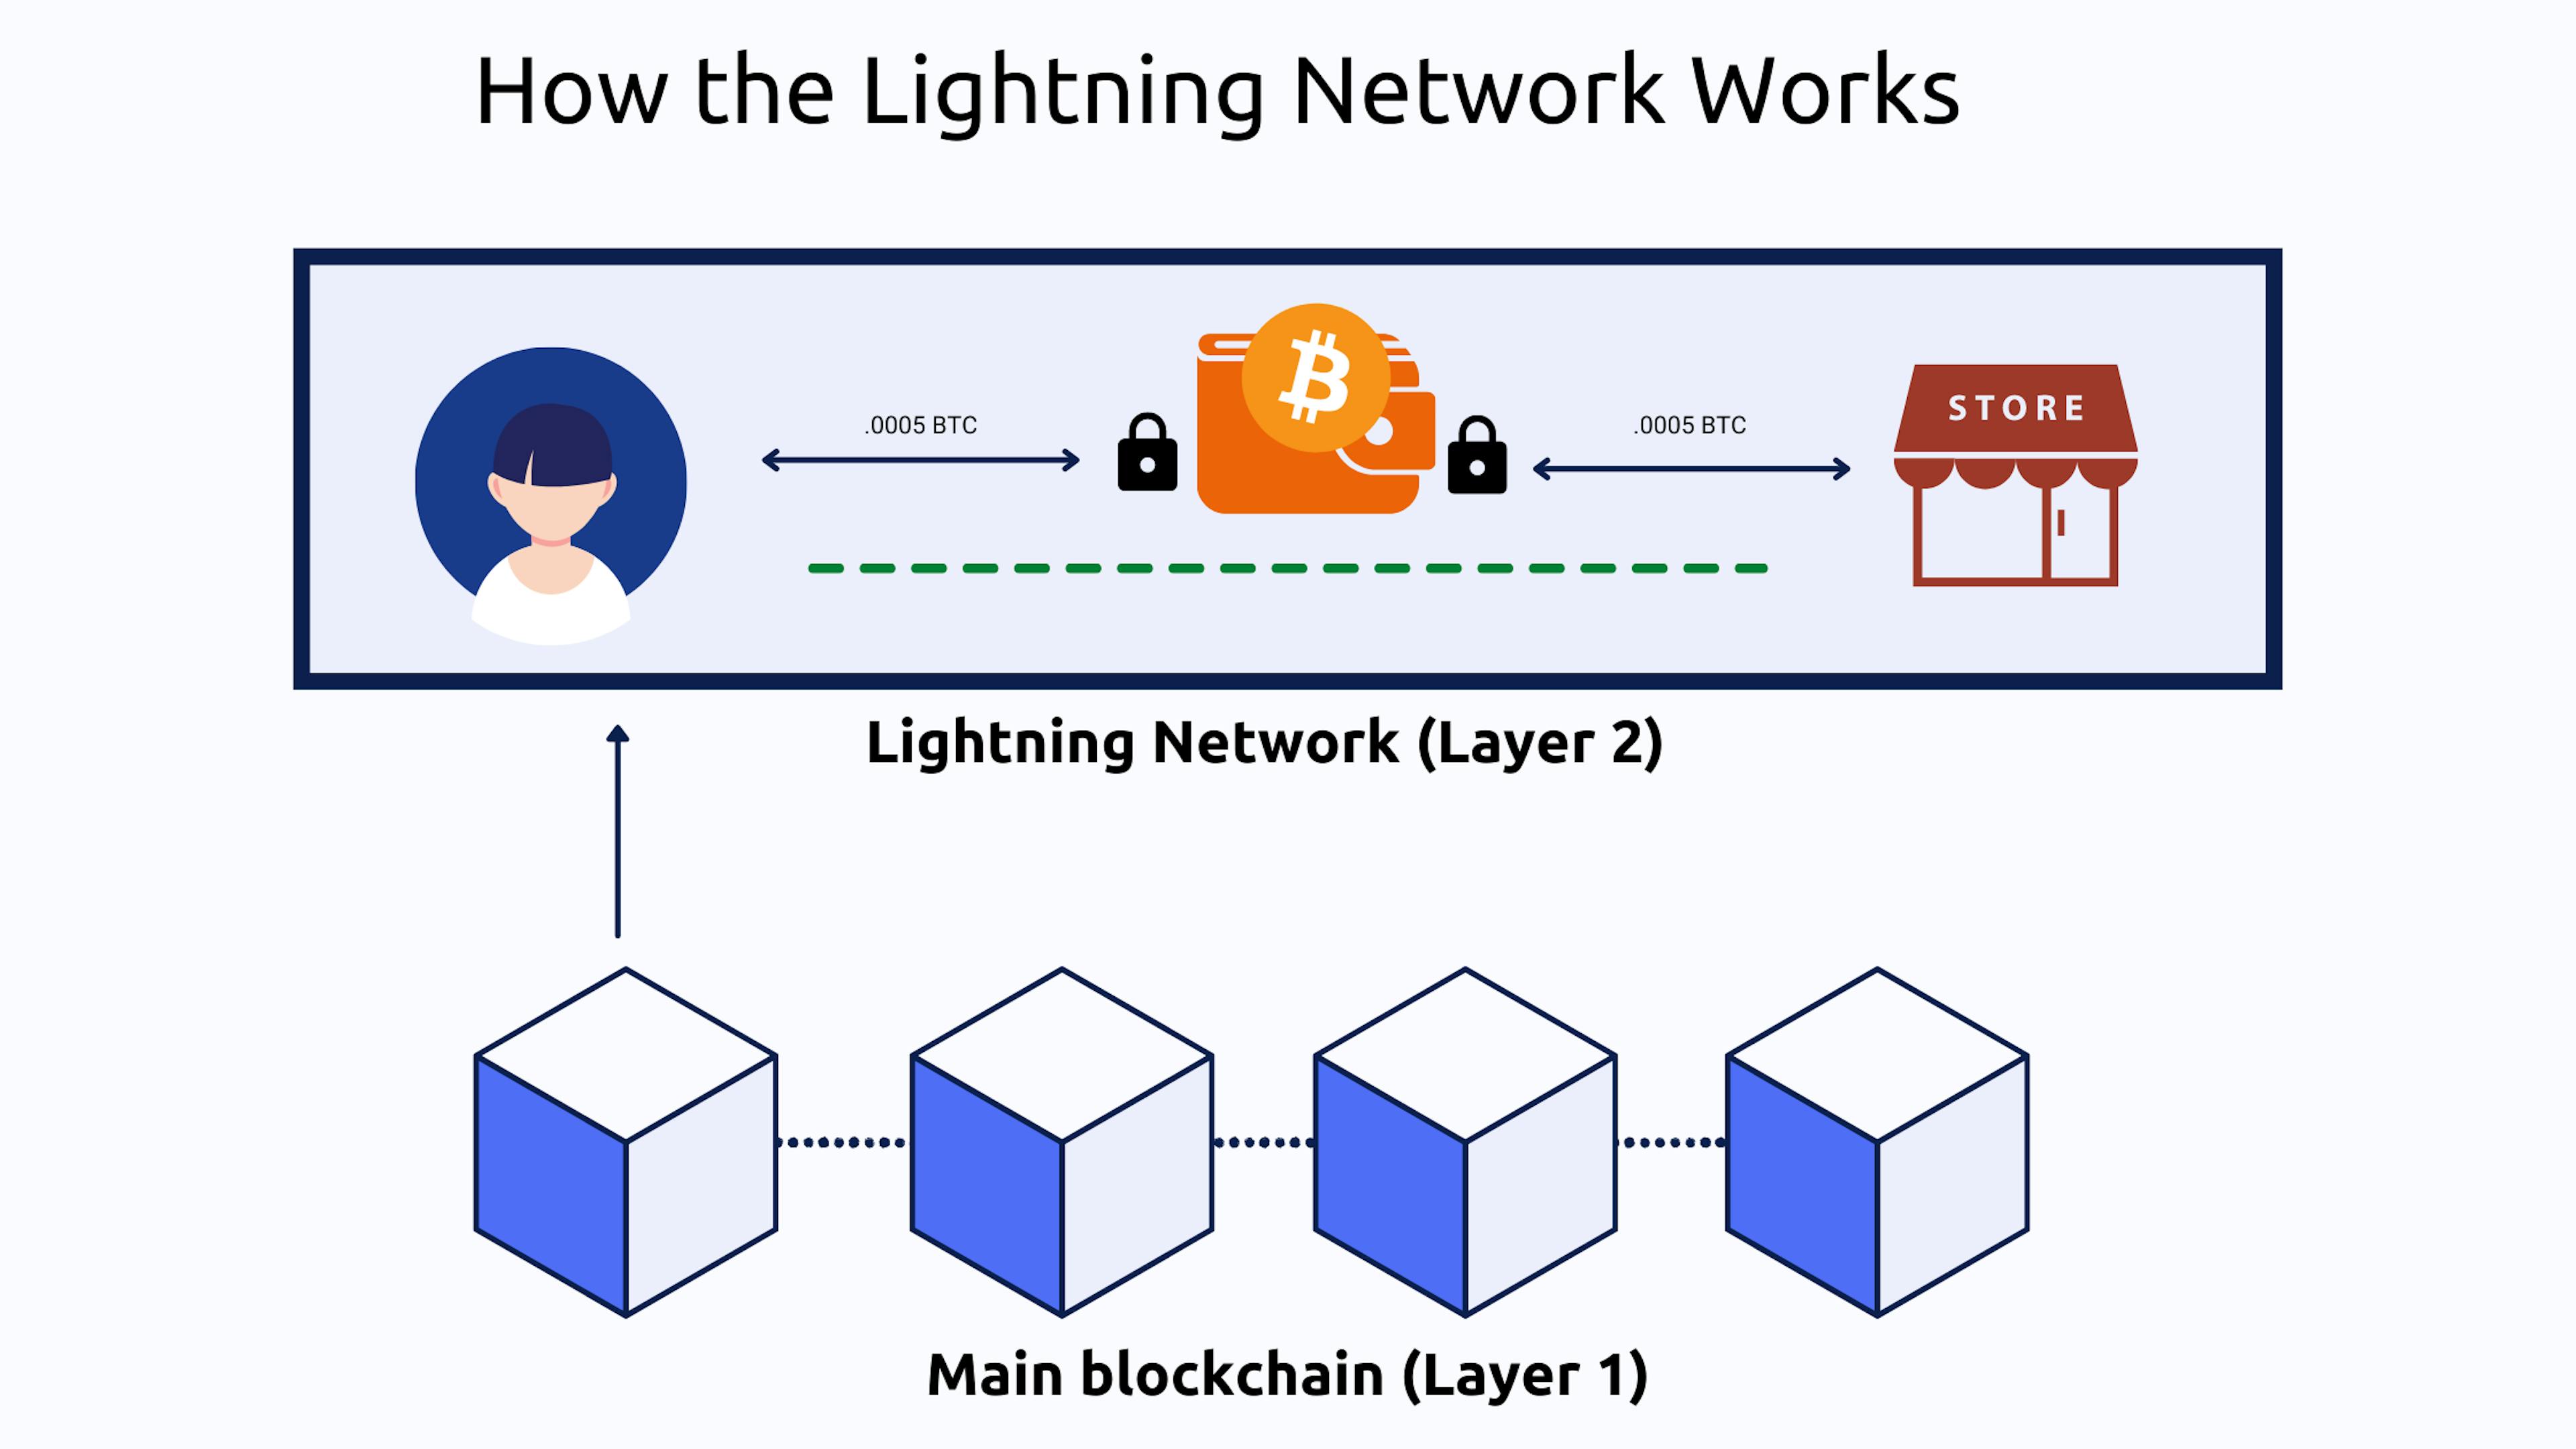 이미지 출처: https://bitpay.com/blog/what-is-the-lightning-network/